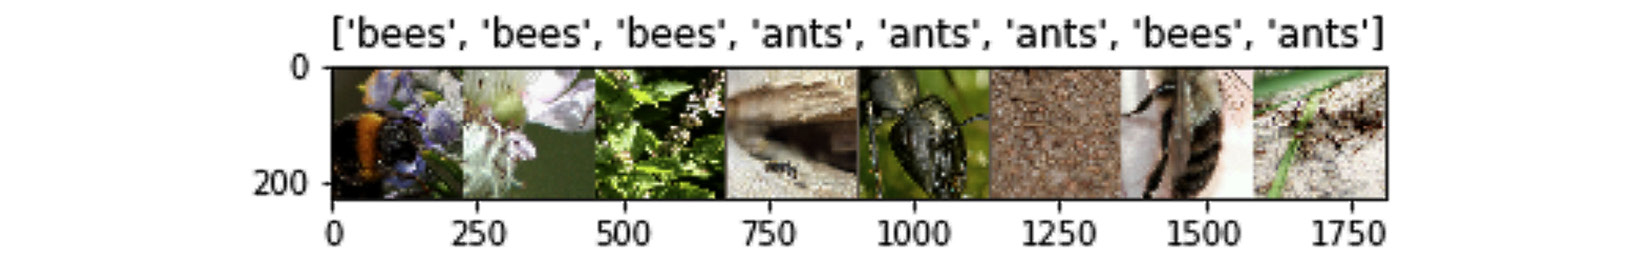 Figure 3.15 – Bees versus ants dataset